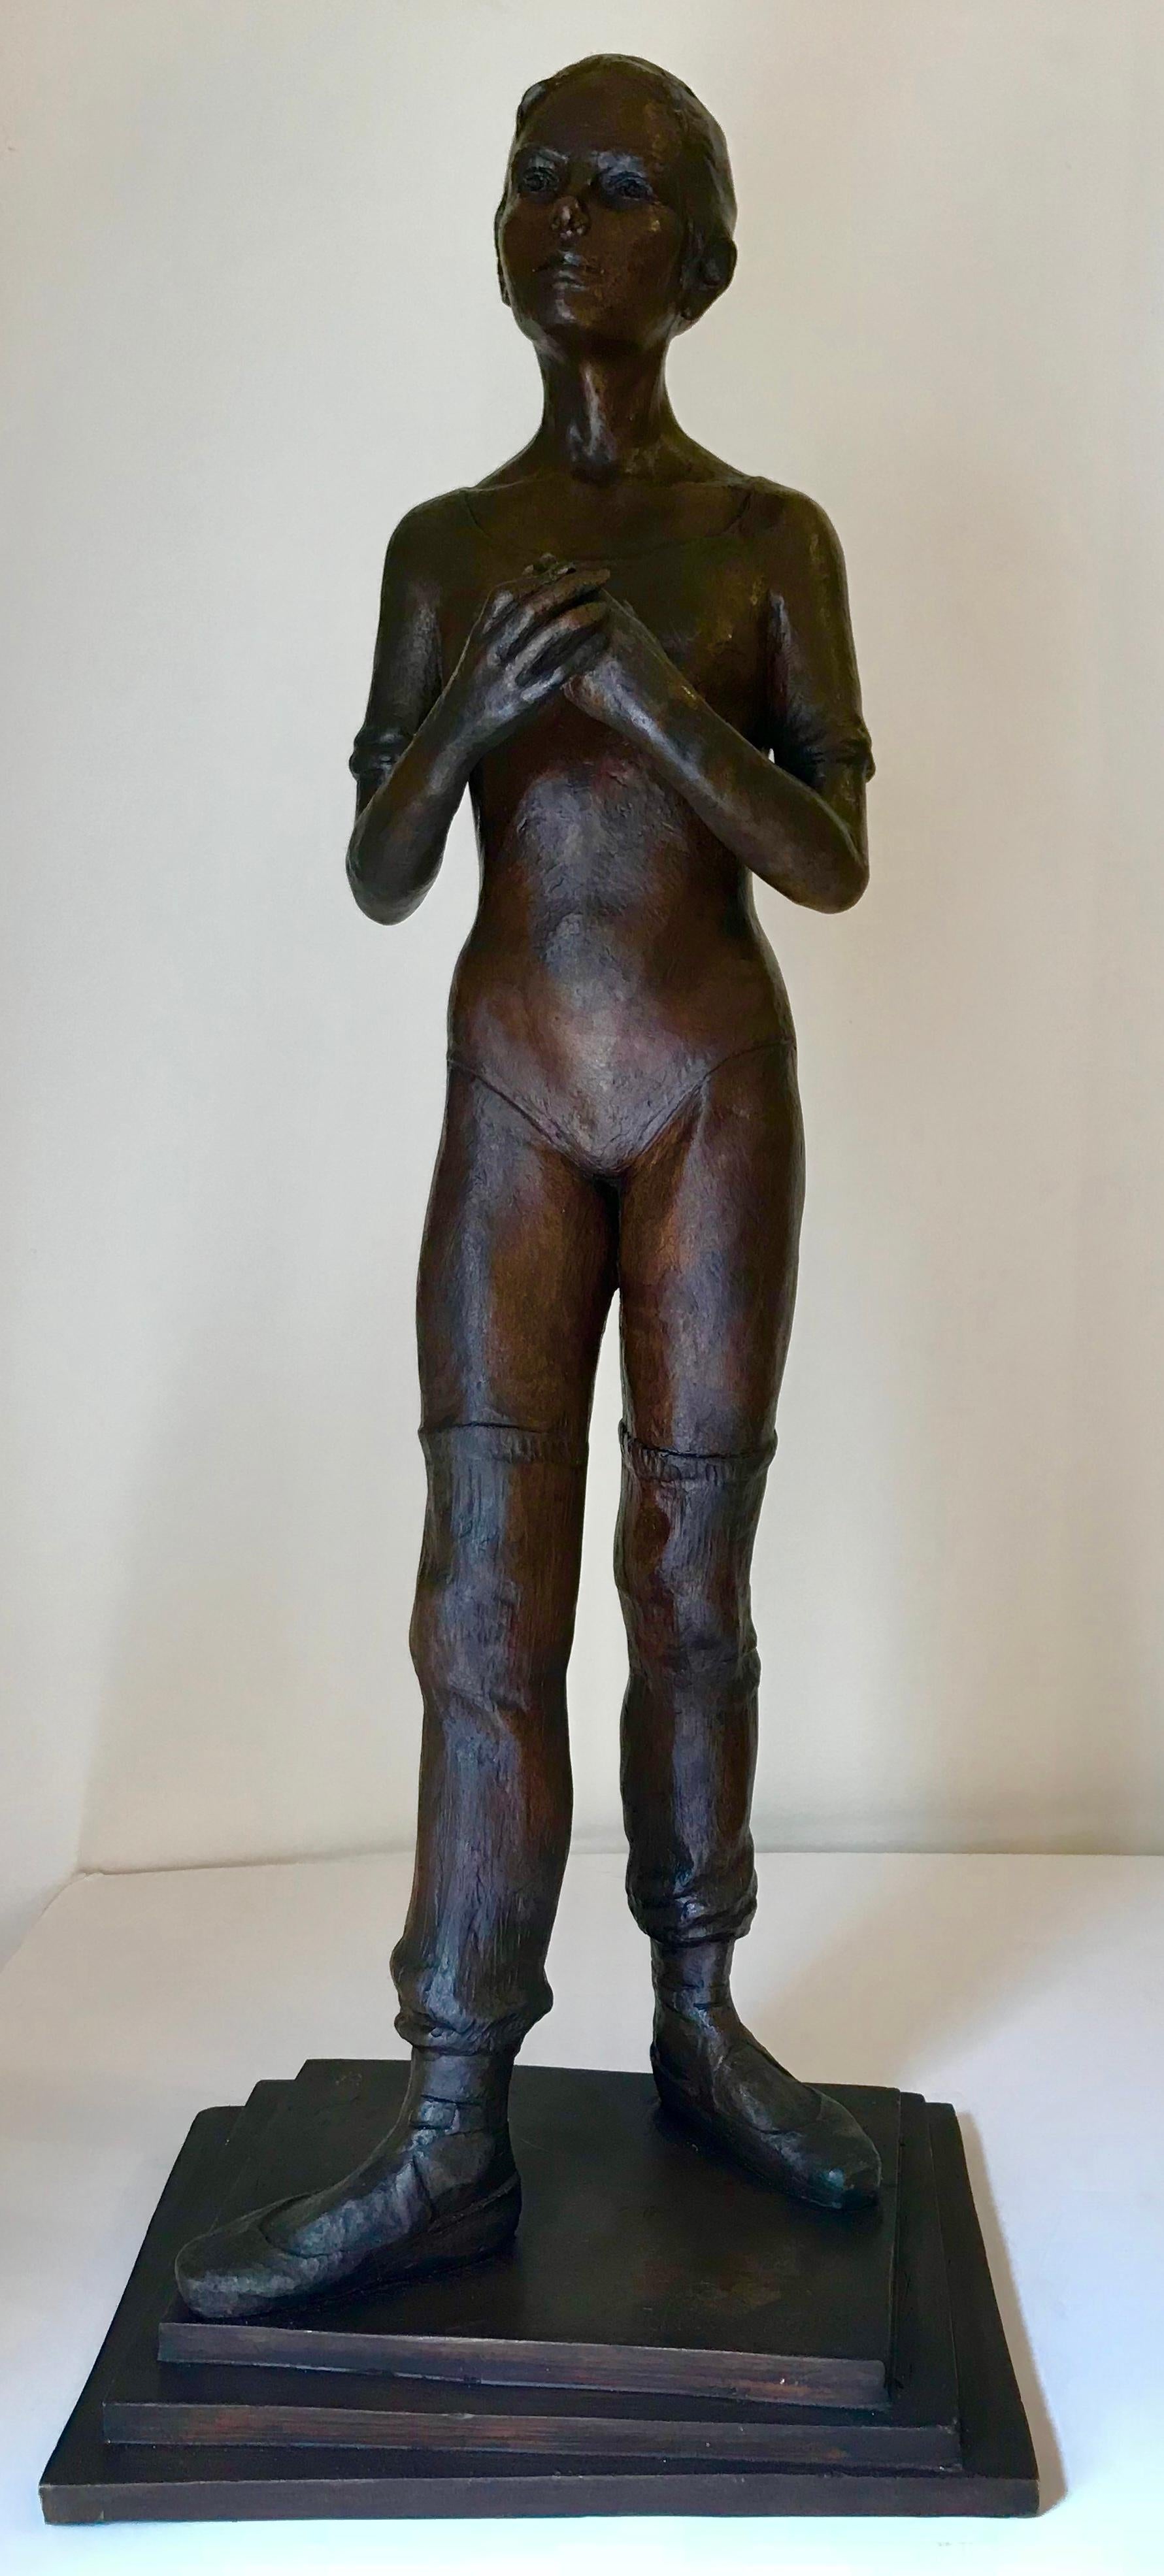 Victor Manuel Villarreal Figurative Sculpture – "Aufwärmen"